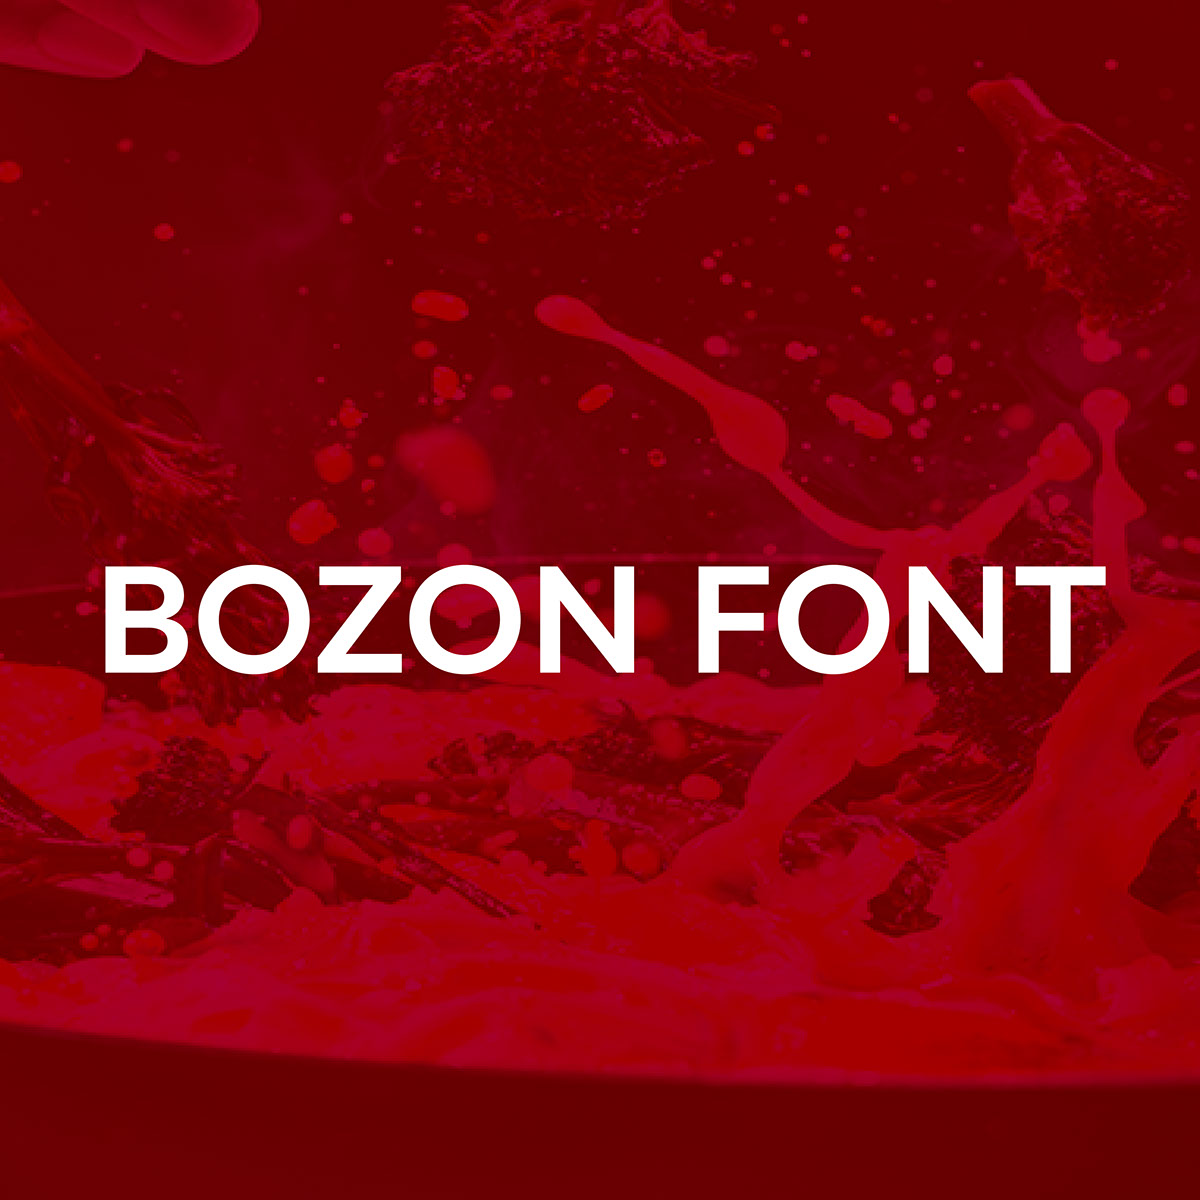 BOZON FONT rendition image